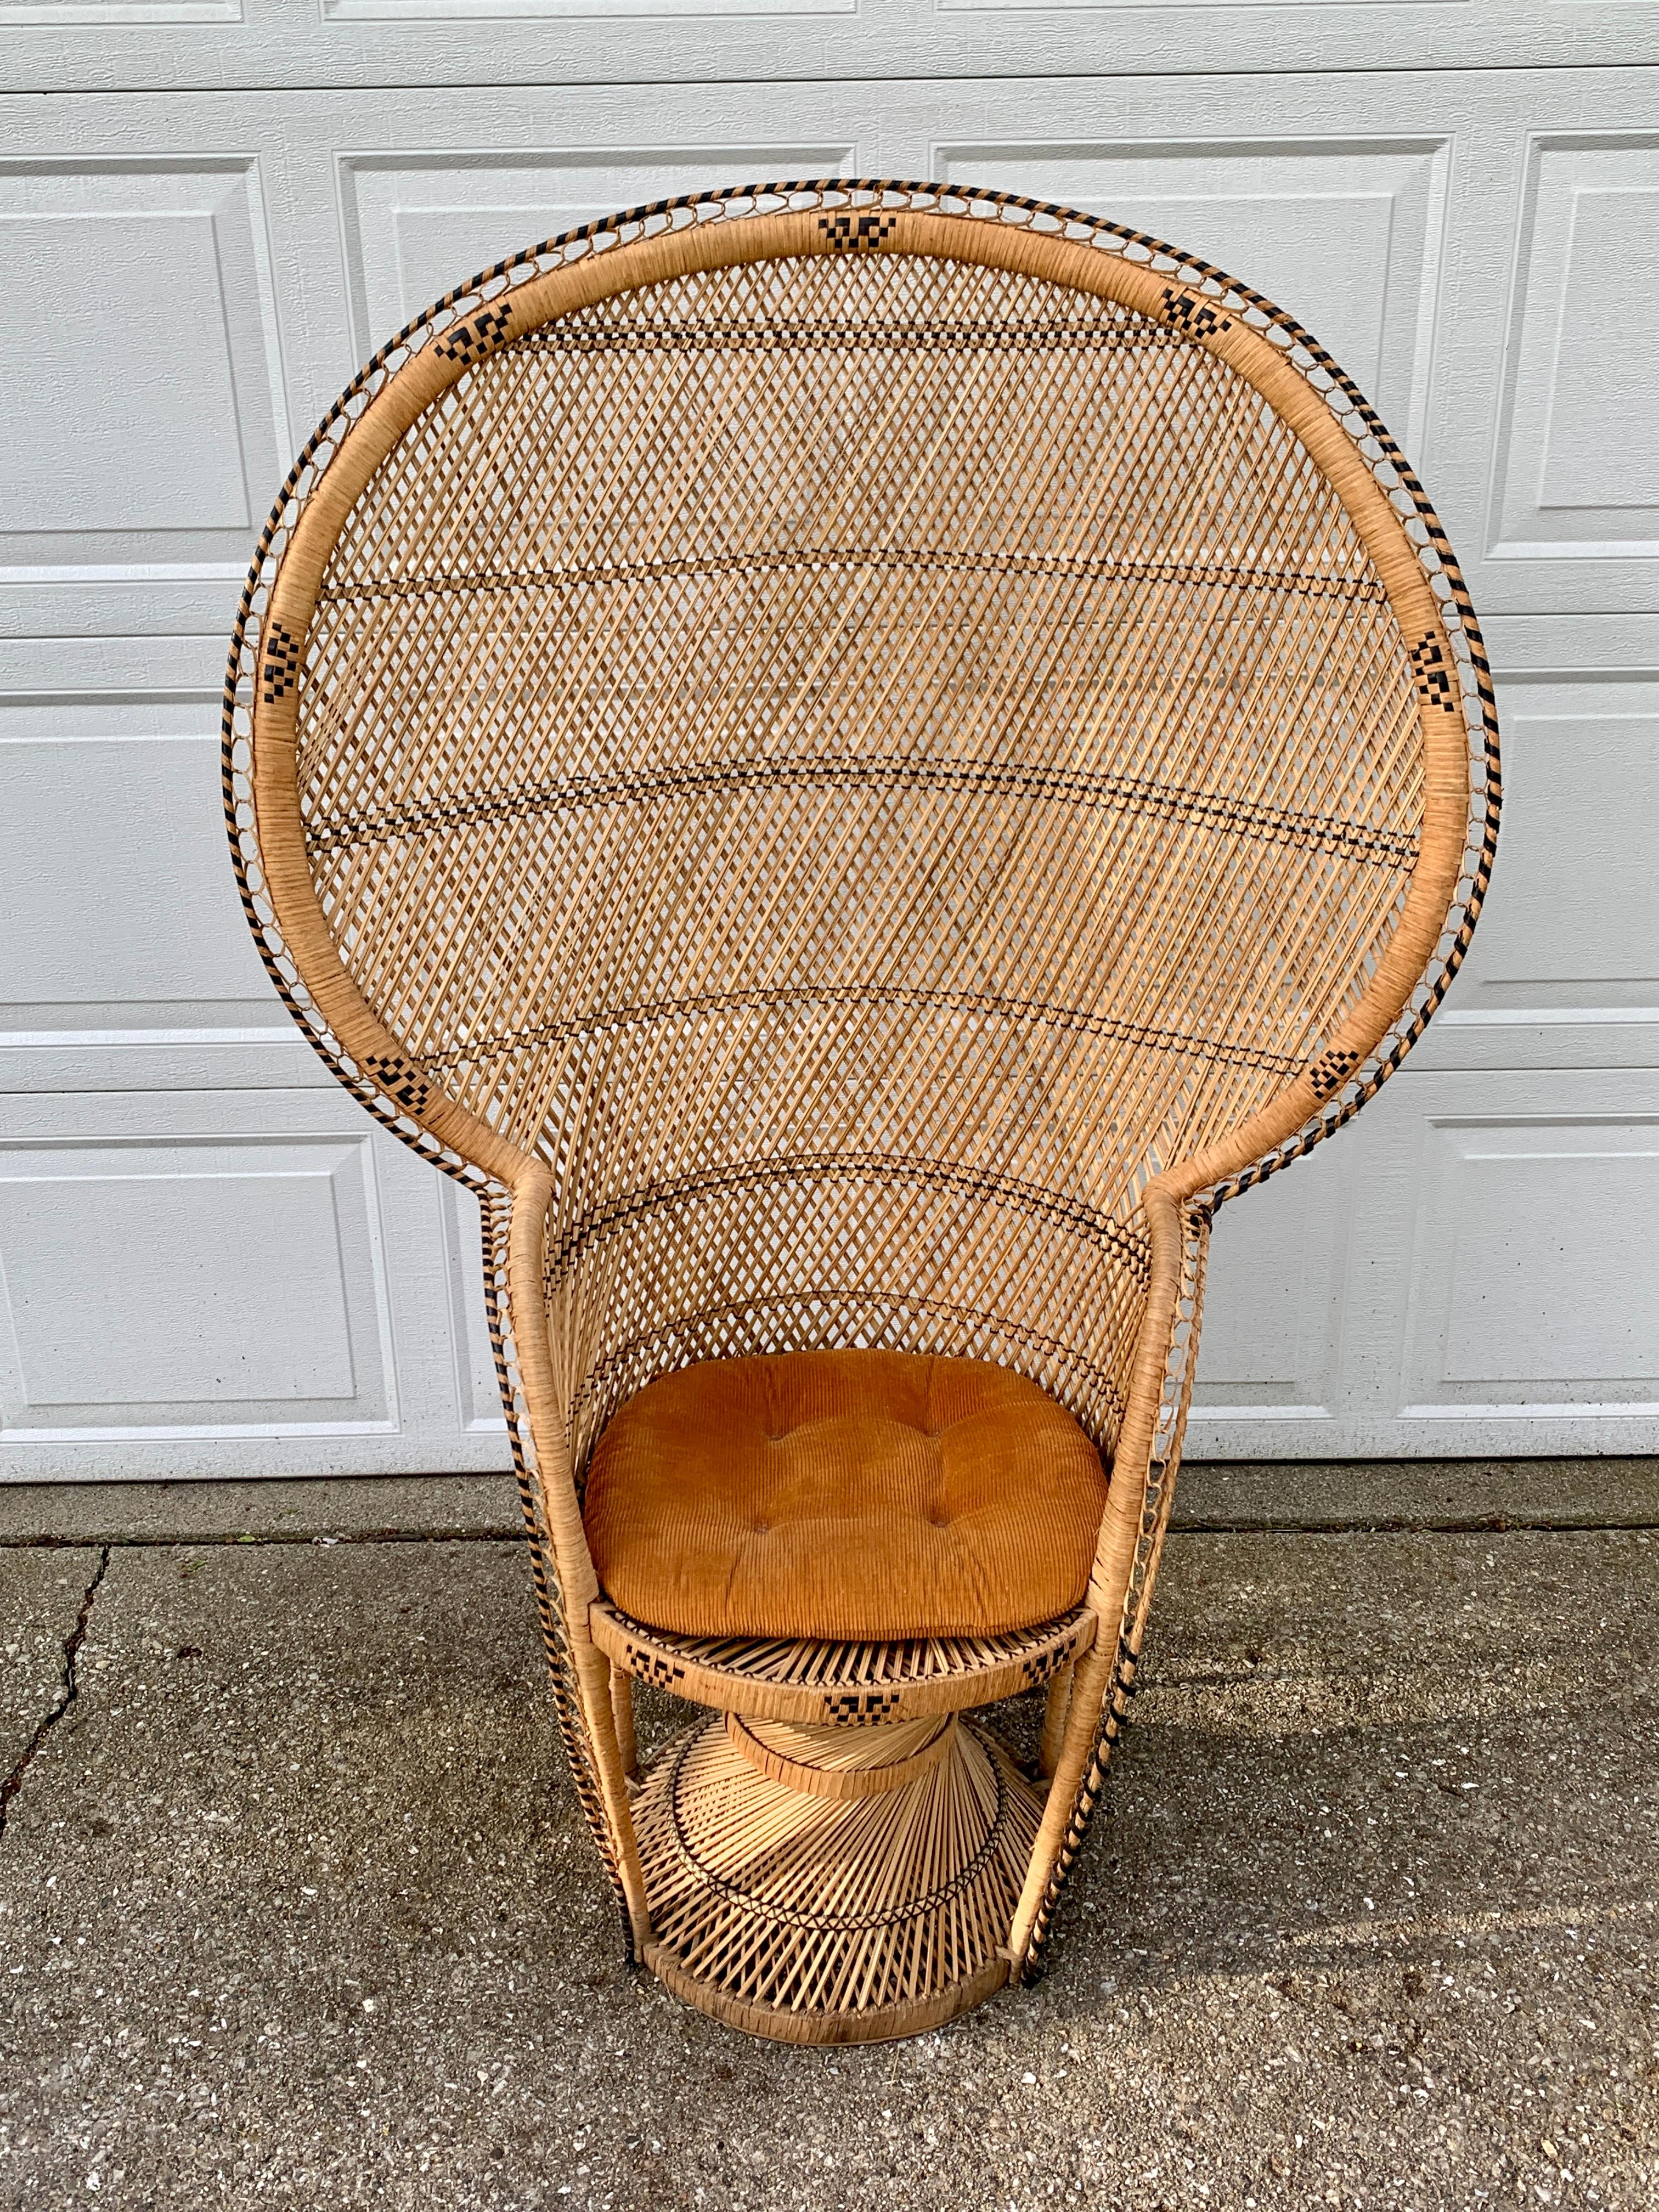 Magnifique chaise paon Icone de Bohème moderne du milieu du siècle.  

Circa 1970  

Rotin et osier tressés, avec un dossier en éventail à grande échelle.  

Dimensions : 40,5 